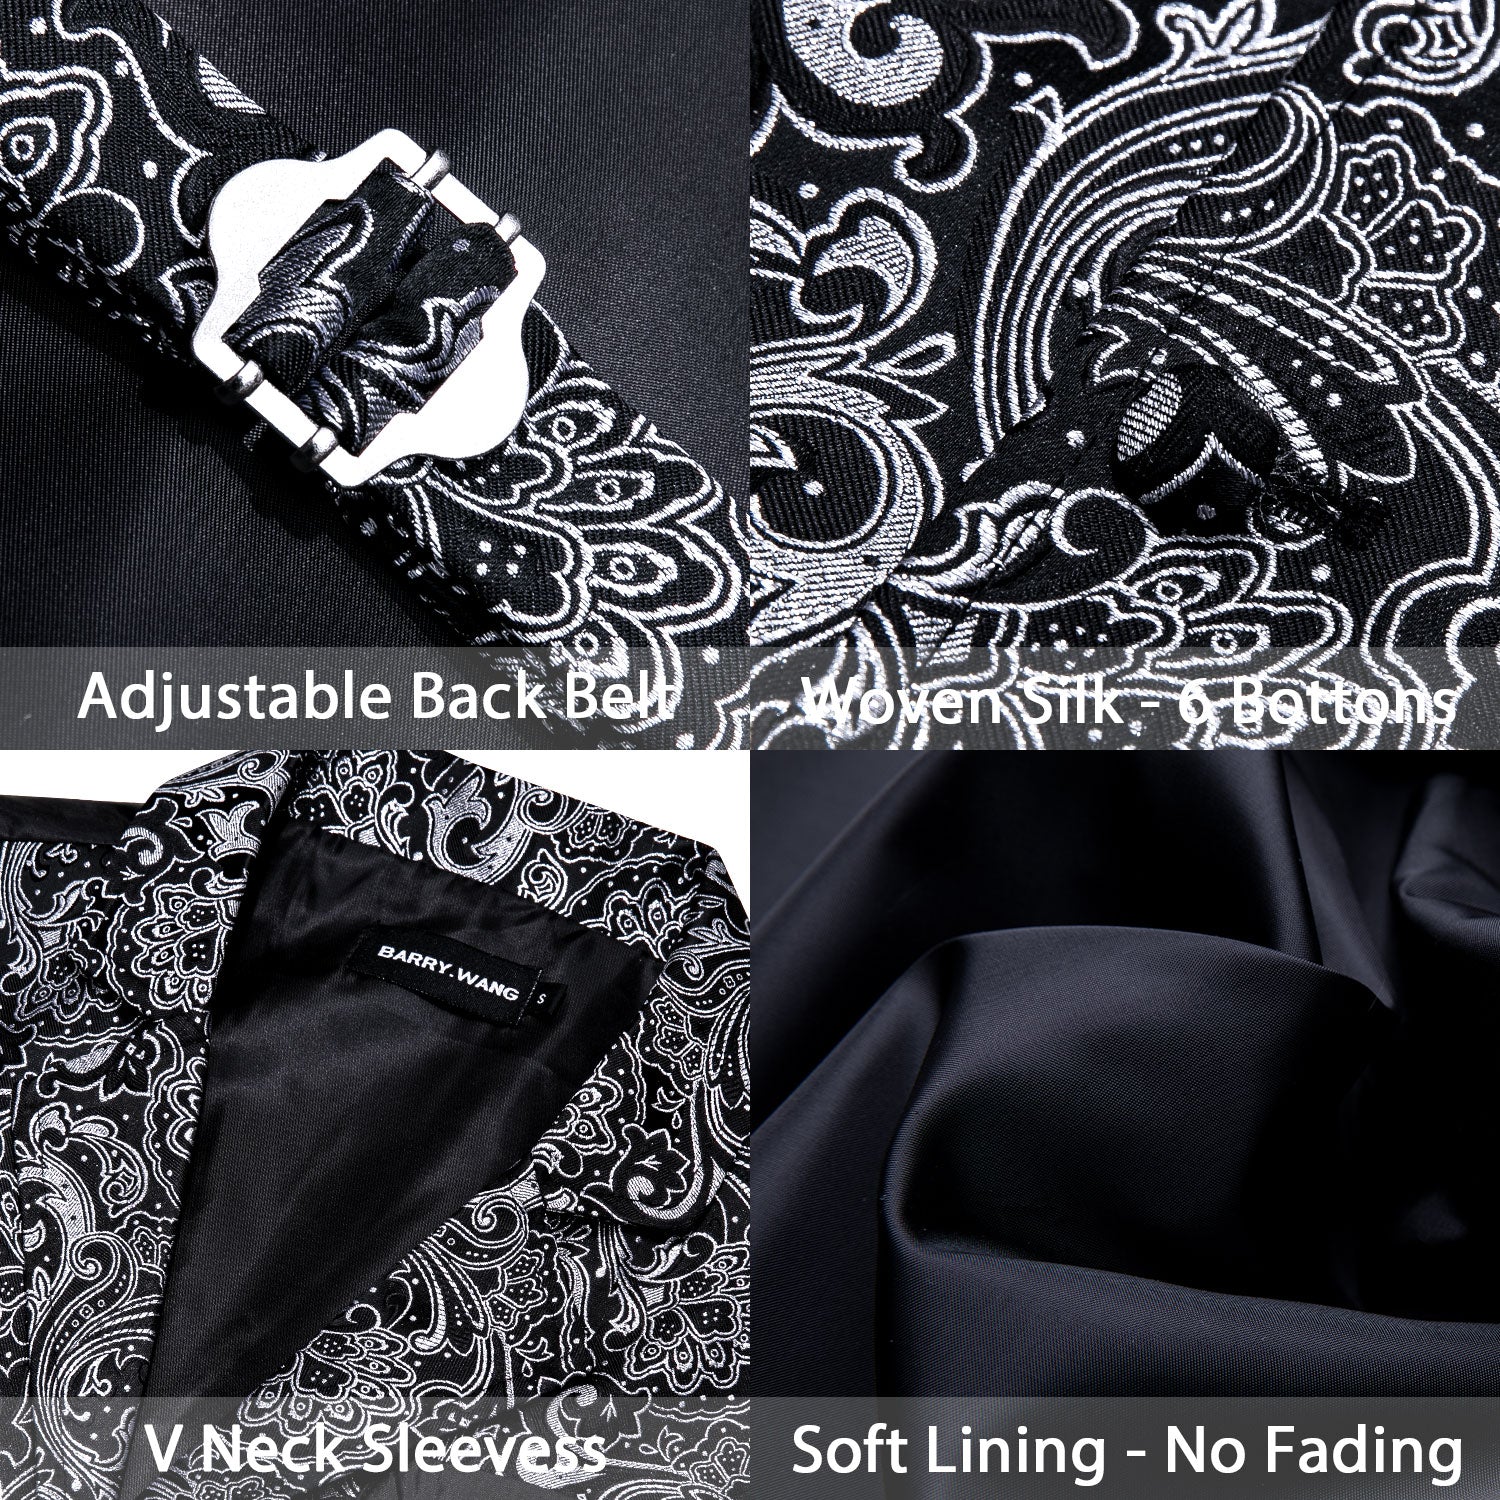 Barry.wang Men's Vest Black White Jacquard Floral Silk Waistcoat Vest